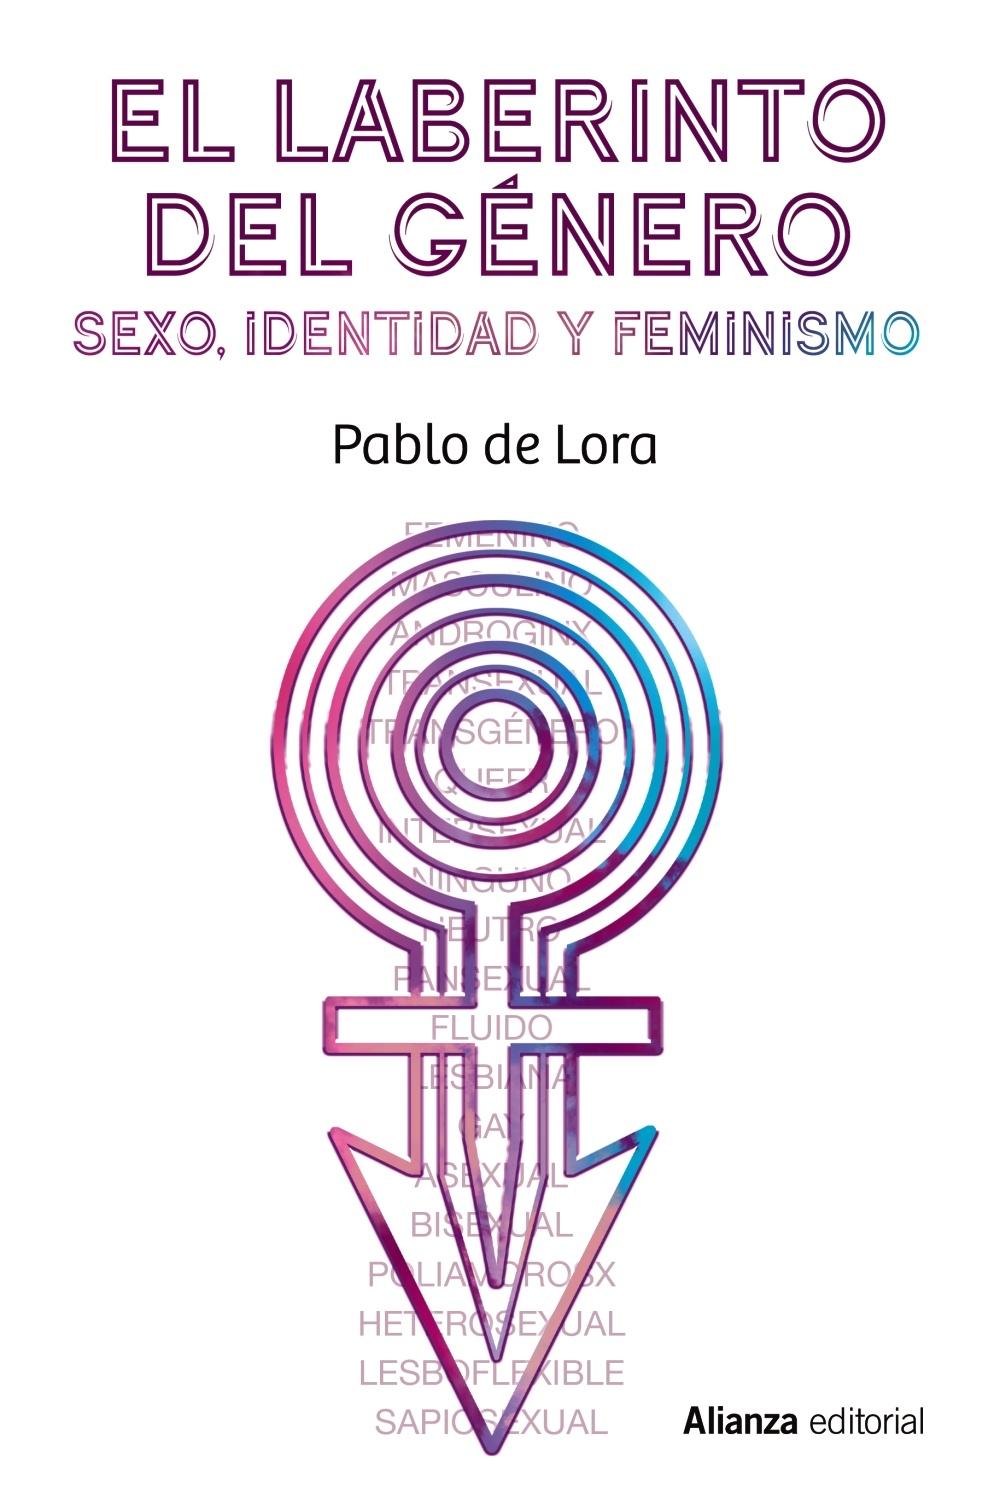 El laberinto del género "Sexo, identidad y feminismo"